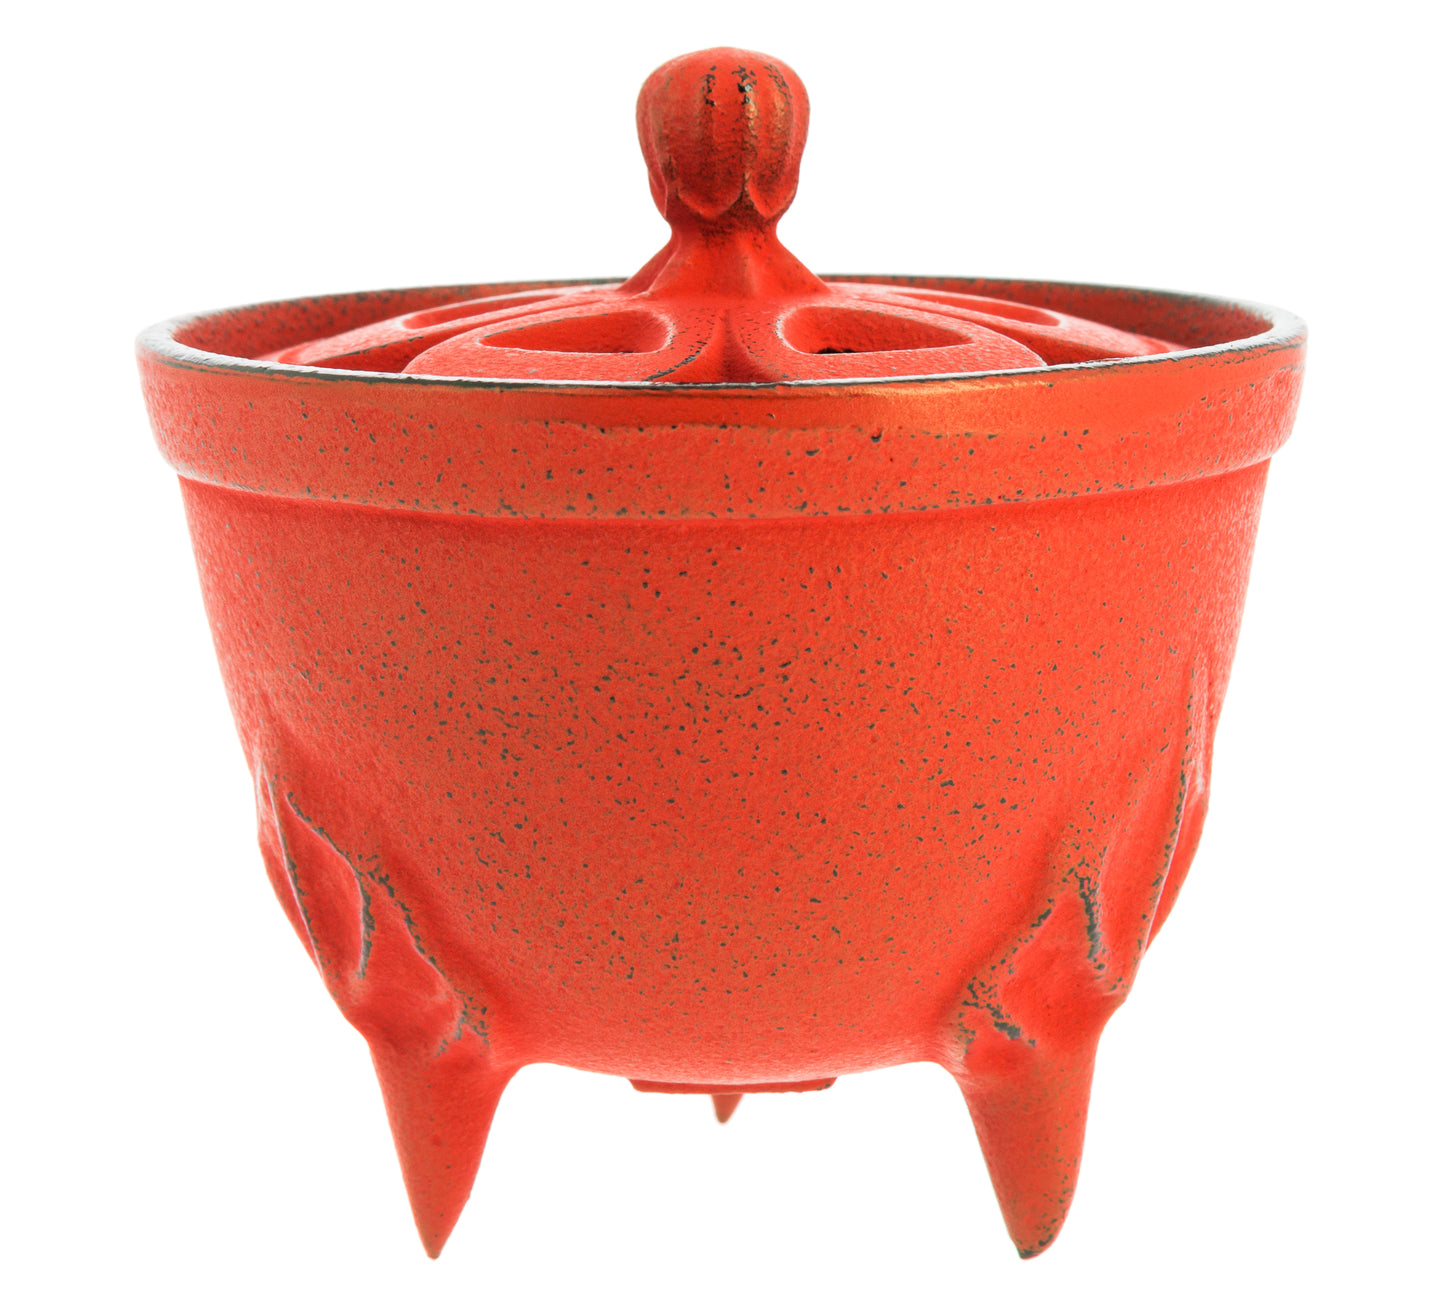 Iwachu Incense Burner - Red Bowl